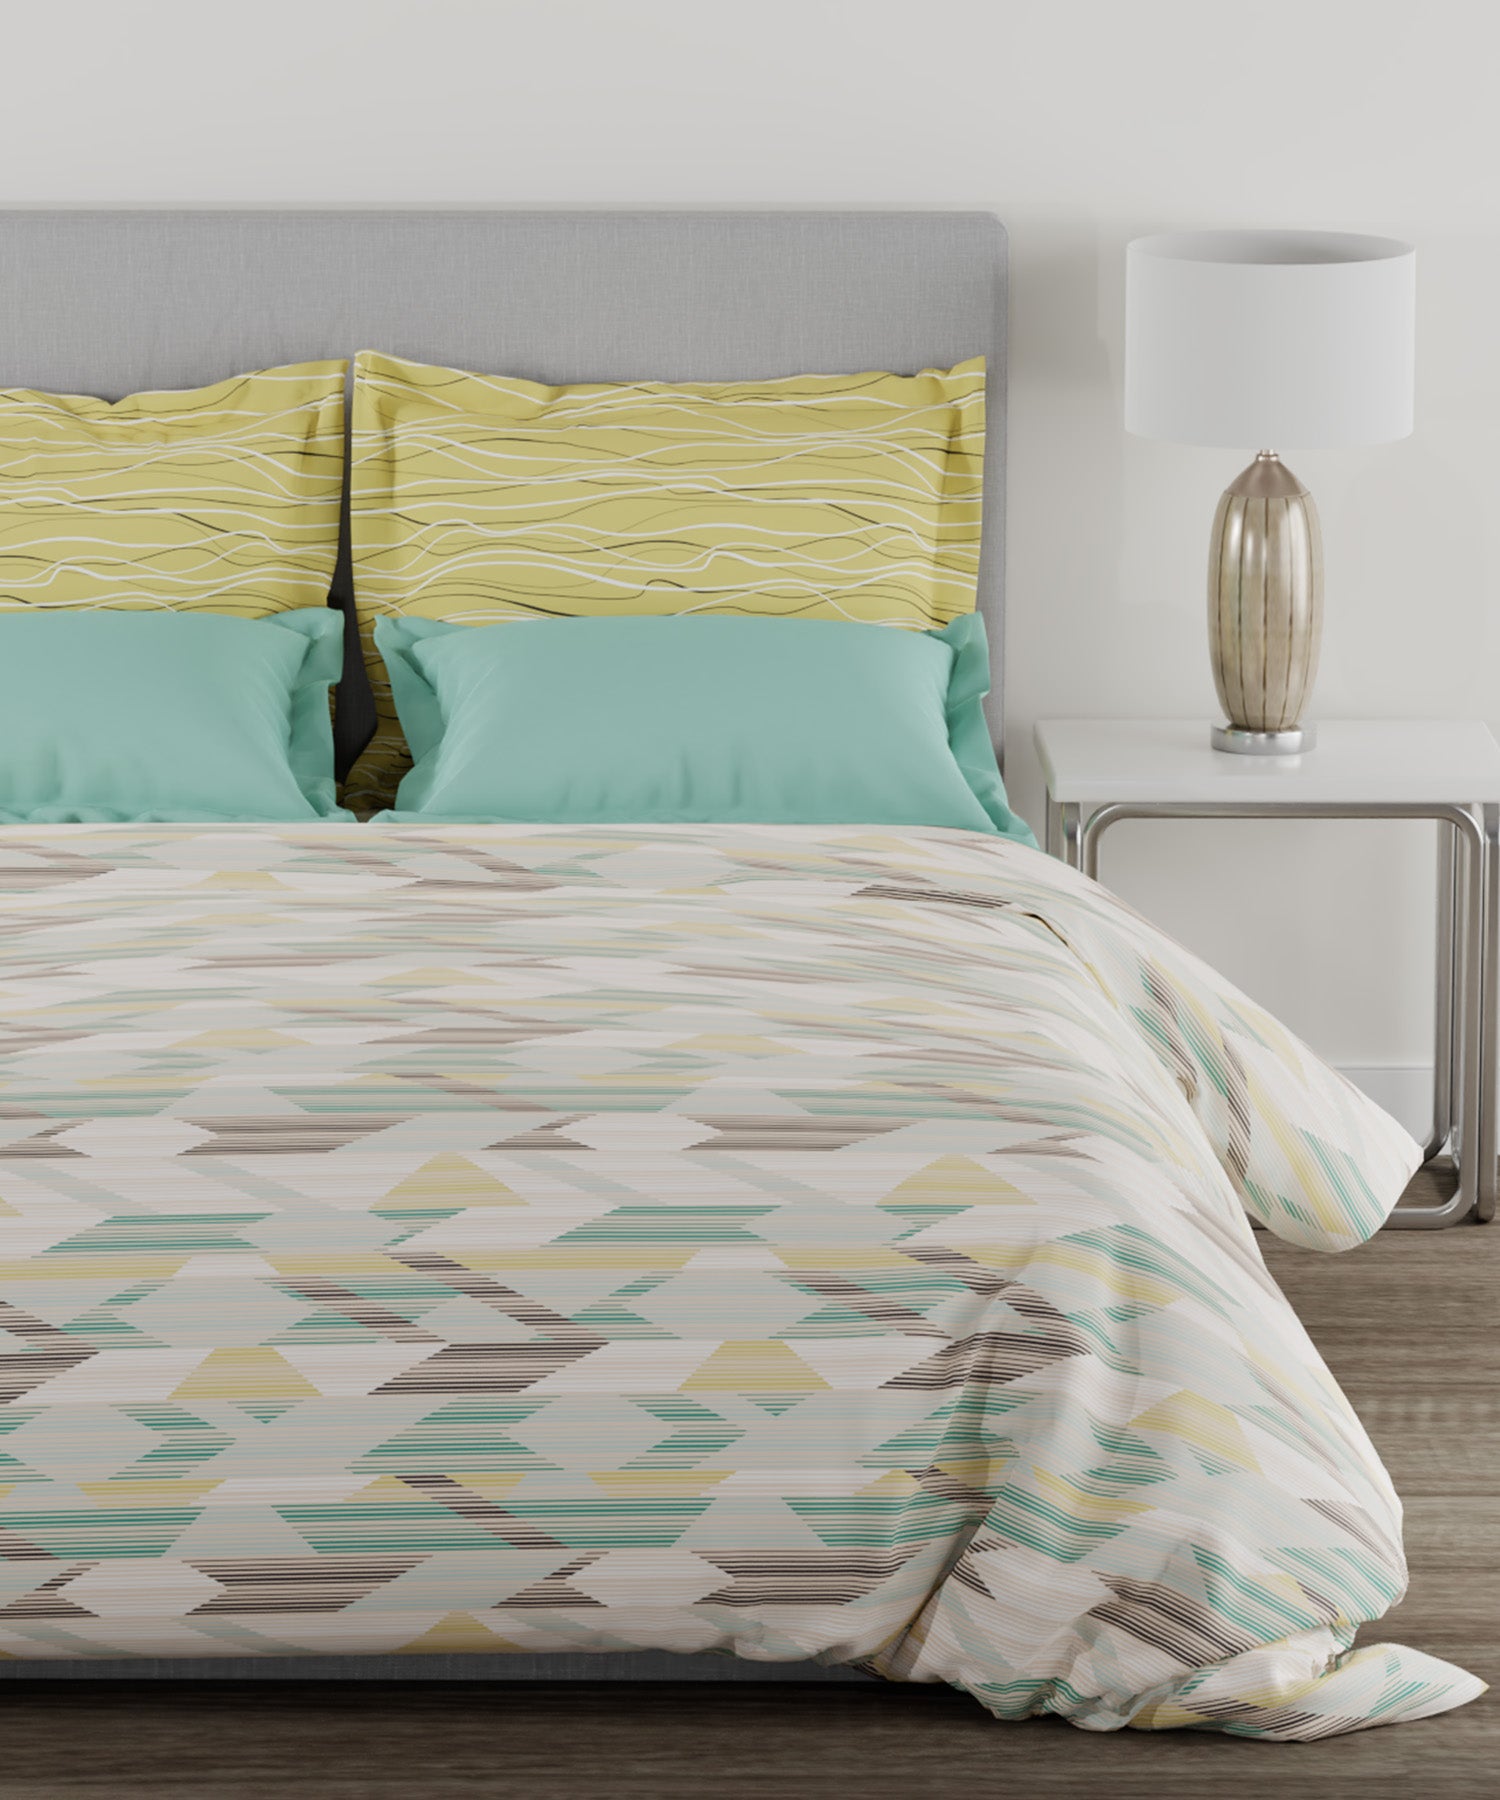 Home Essential Single Bedsheet Set,144 TC, 100% Cotton, Zenet Sage